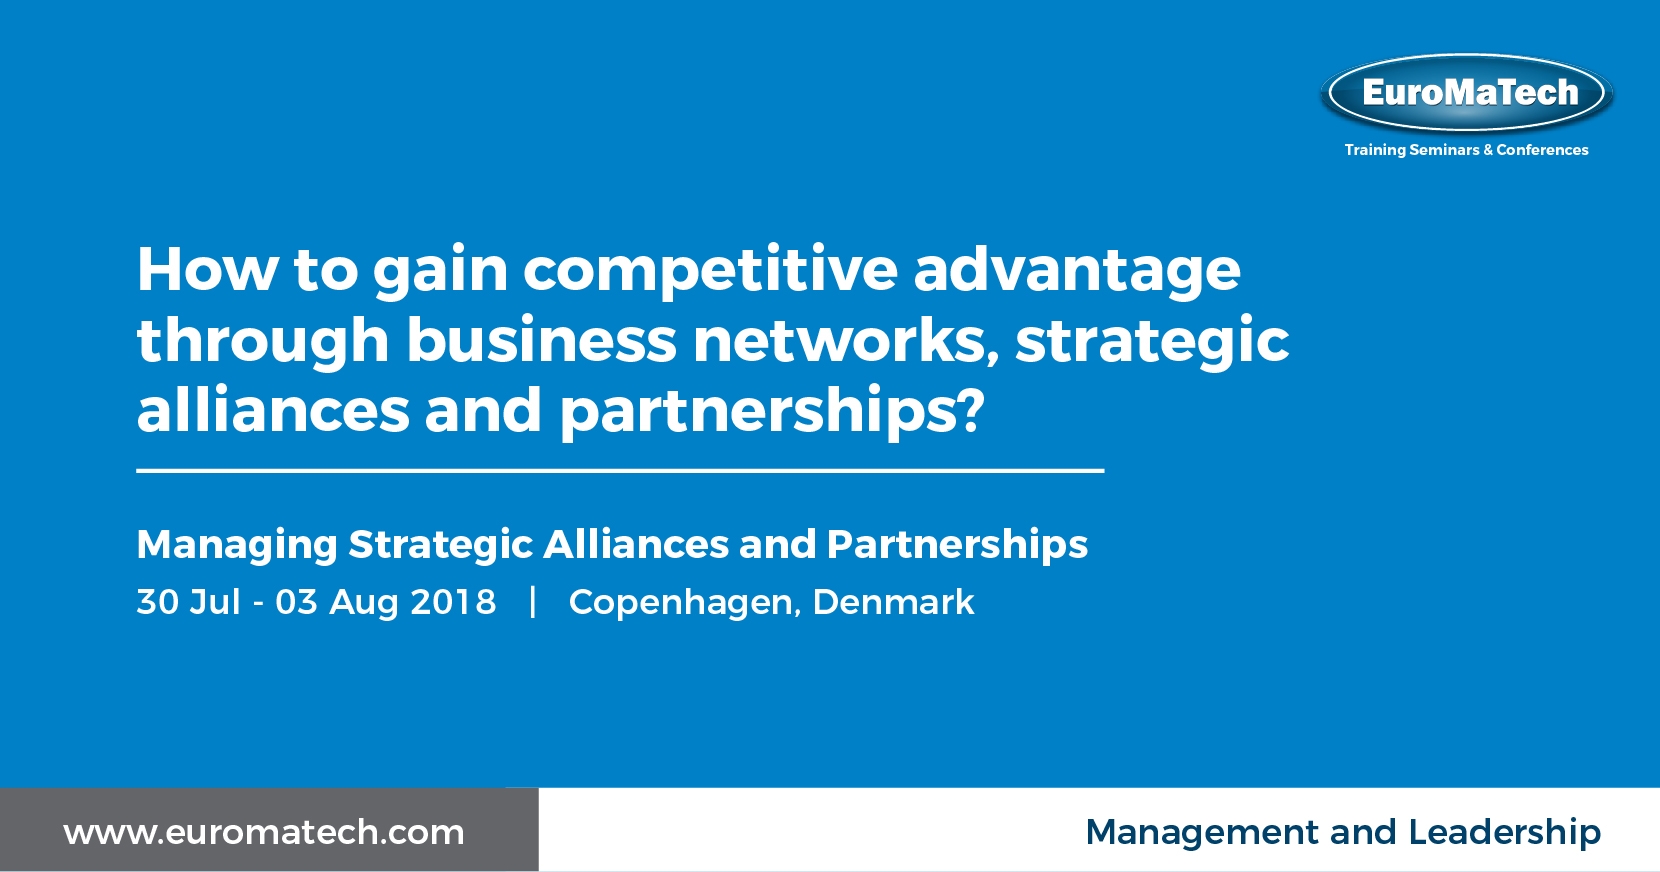 Managing Strategic Alliances and Partnerships Training Course